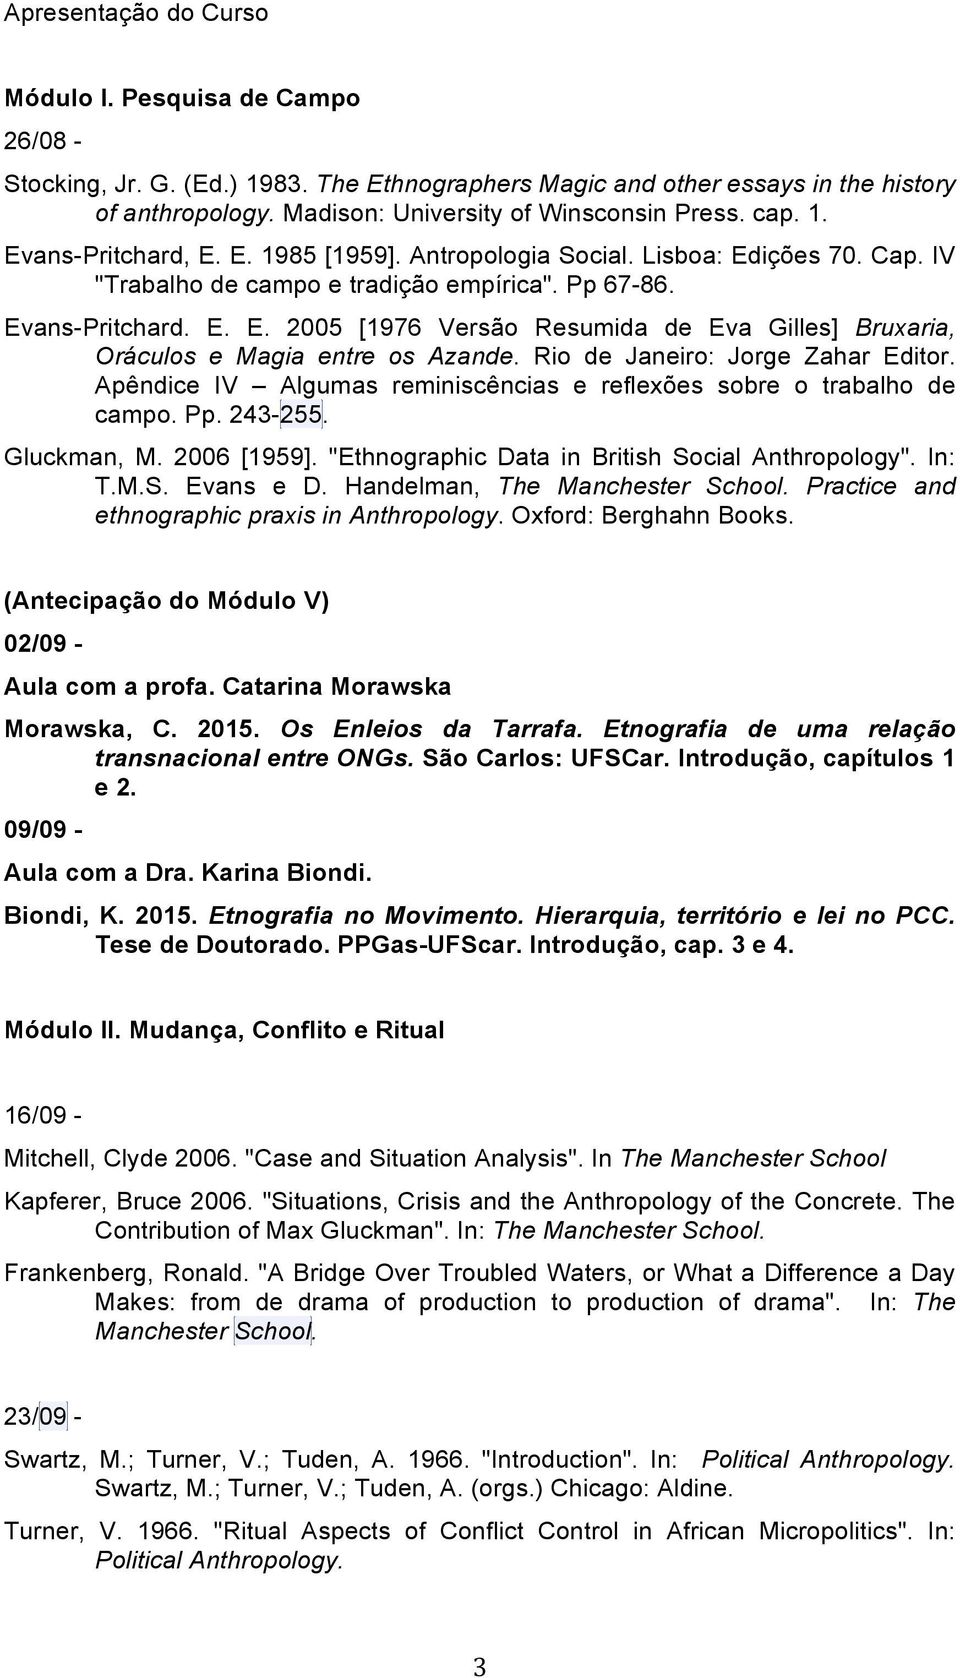 Rio de Janeiro: Jorge Zahar Editor. Apêndice IV Algumas reminiscências e reflexões sobre o trabalho de campo. Pp. 243-255. Gluckman, M. 2006 [1959]. "Ethnographic Data in British Social Anthropology".